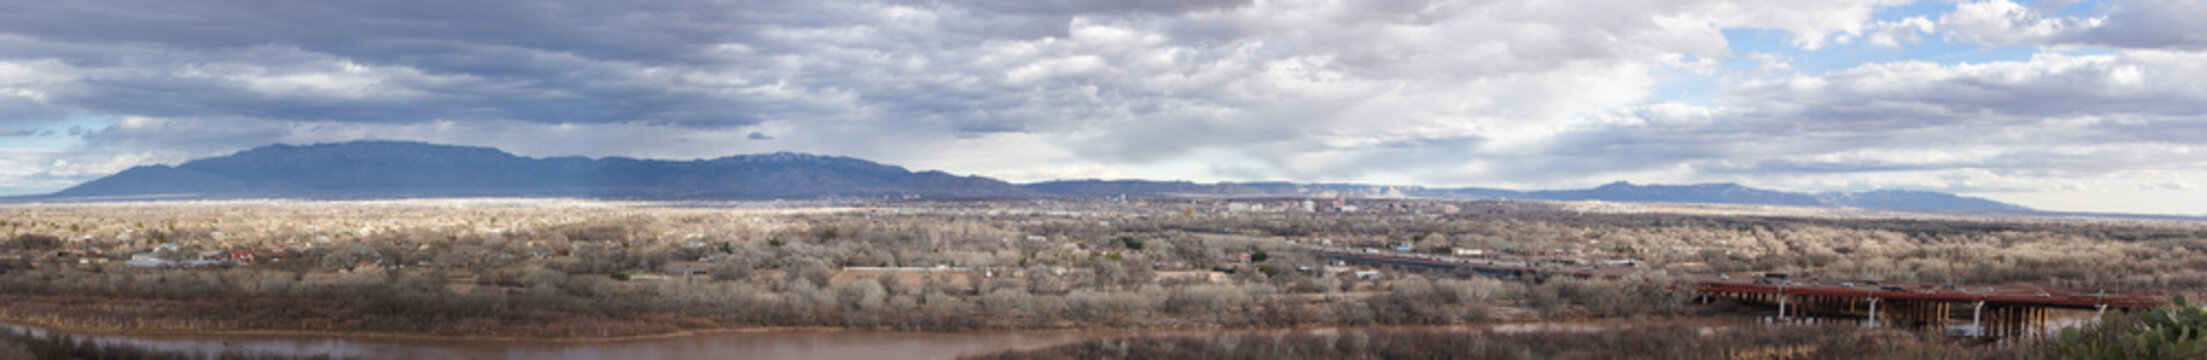 Panorama Albuquerque New Mexico USA